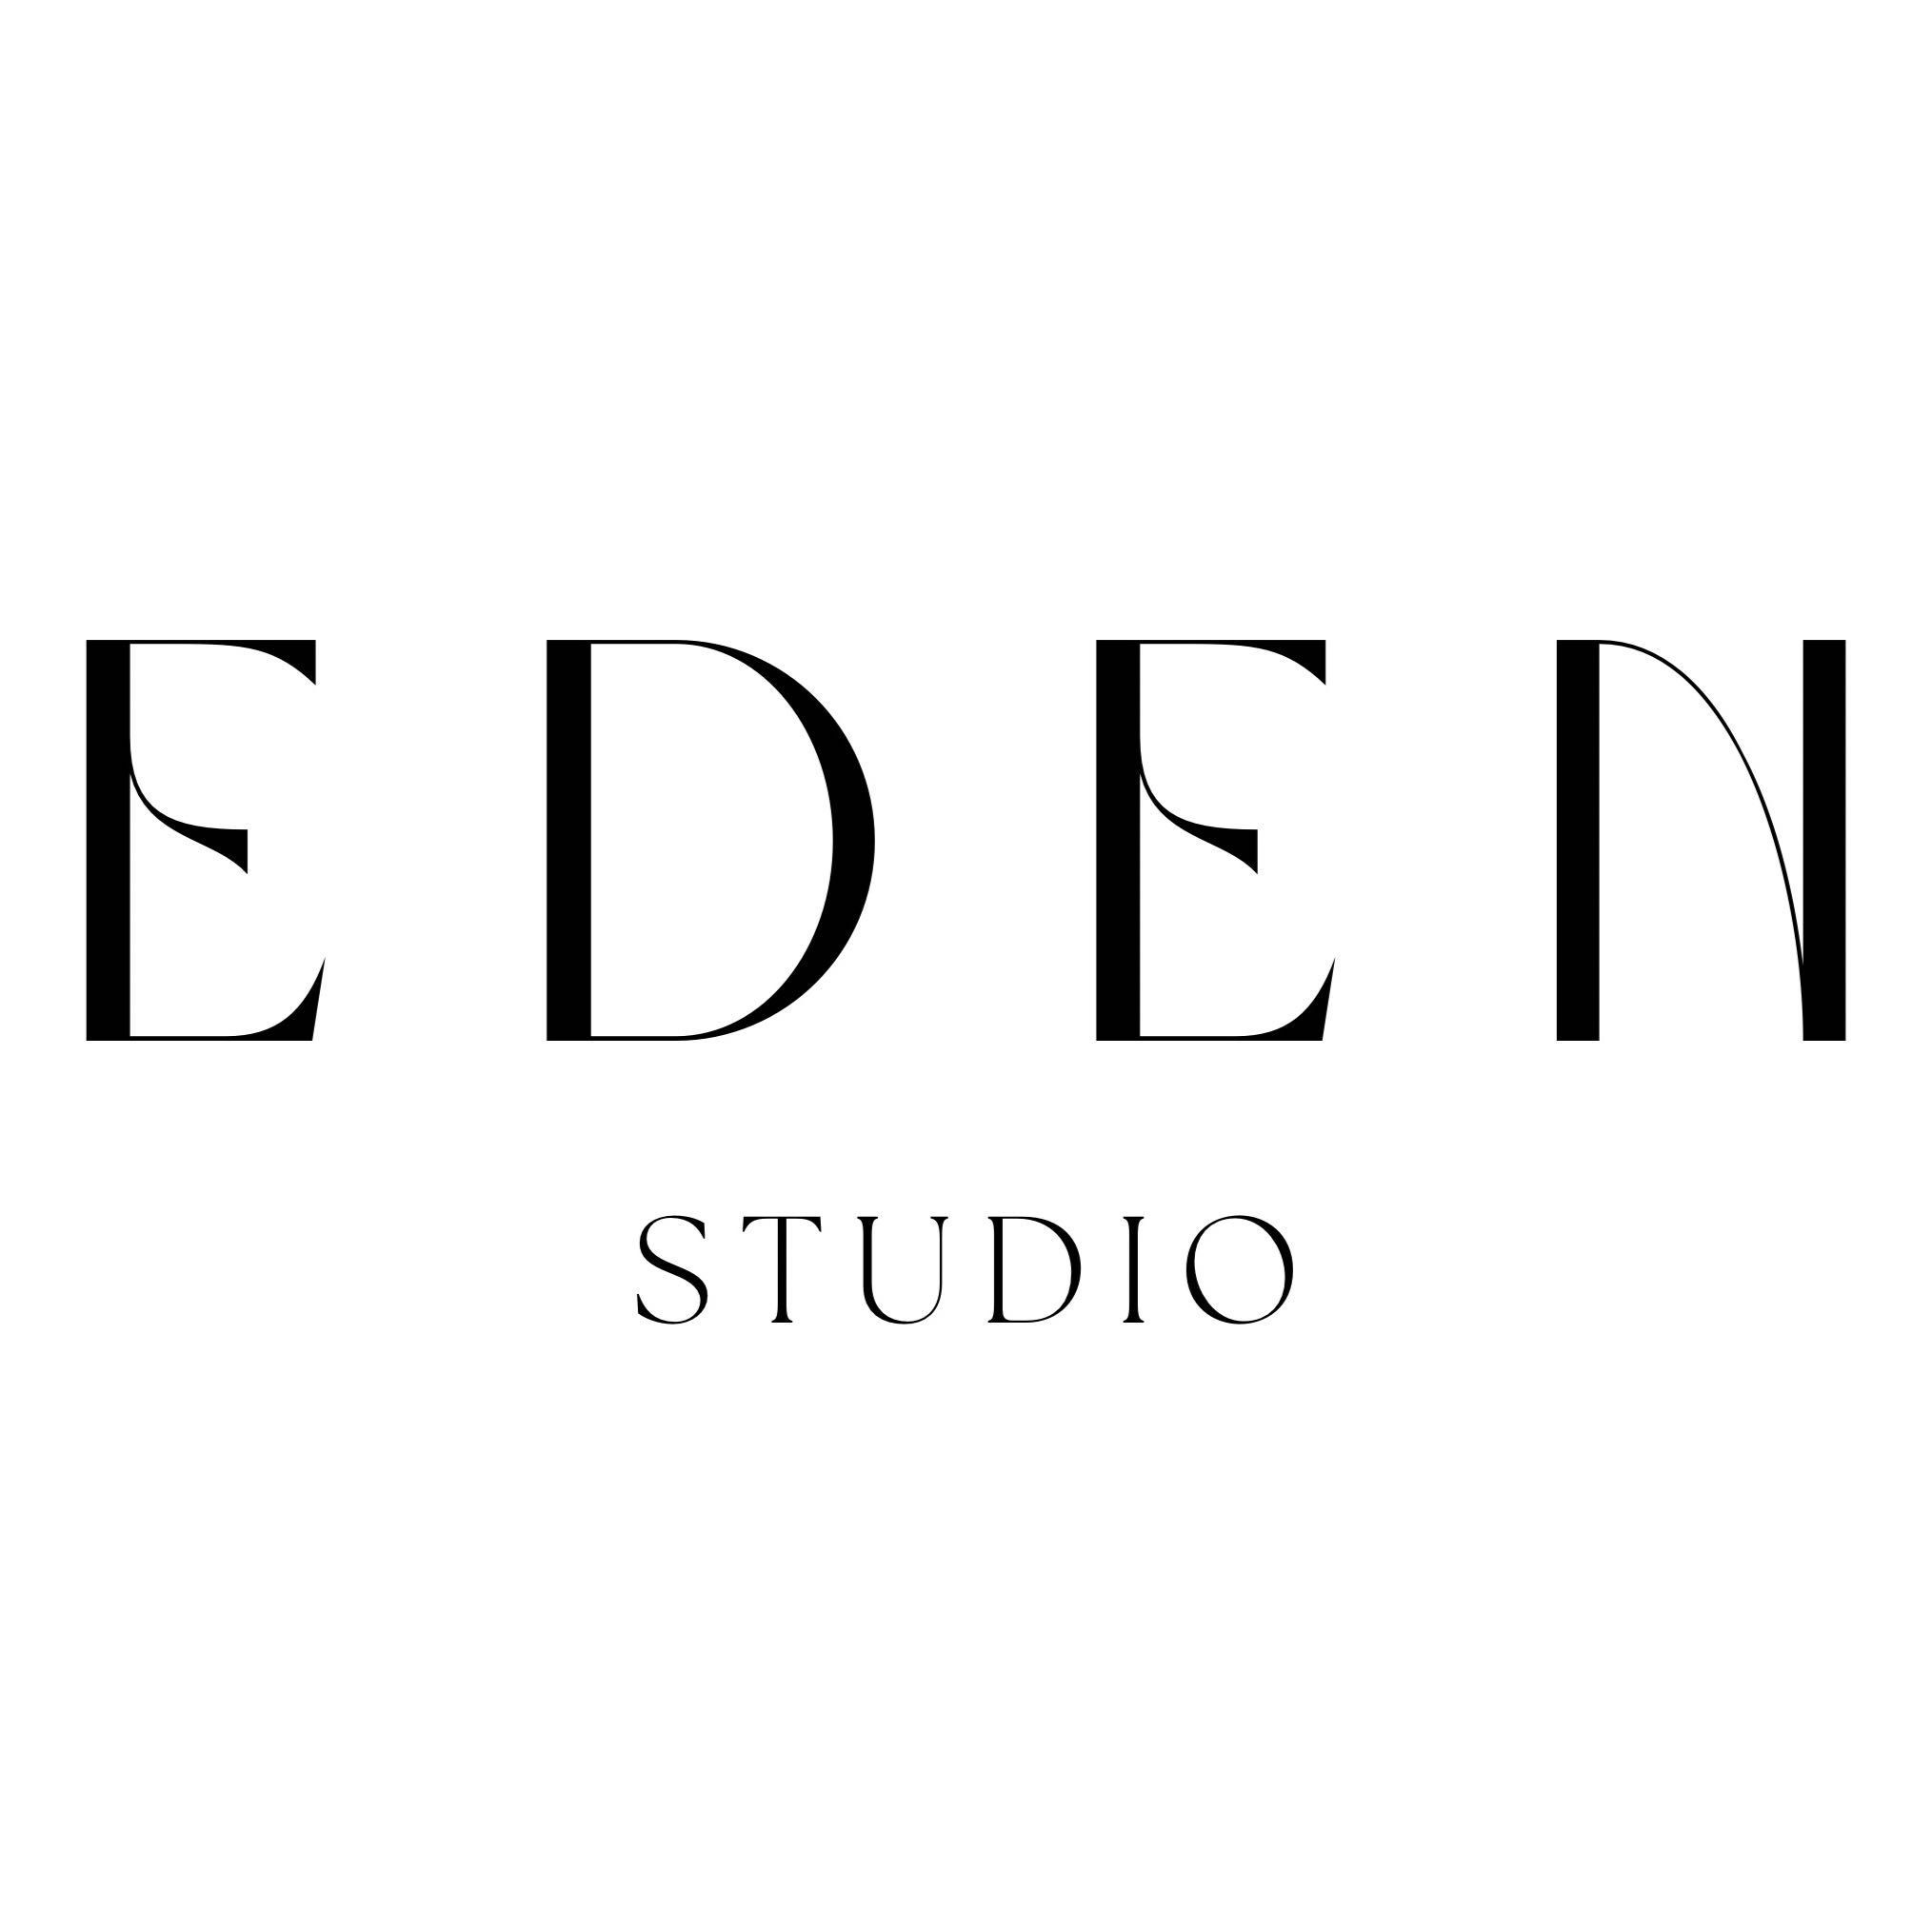 Eden Studio, Carrer de Joan Torras, 36, Local 1, 08030, Barcelona